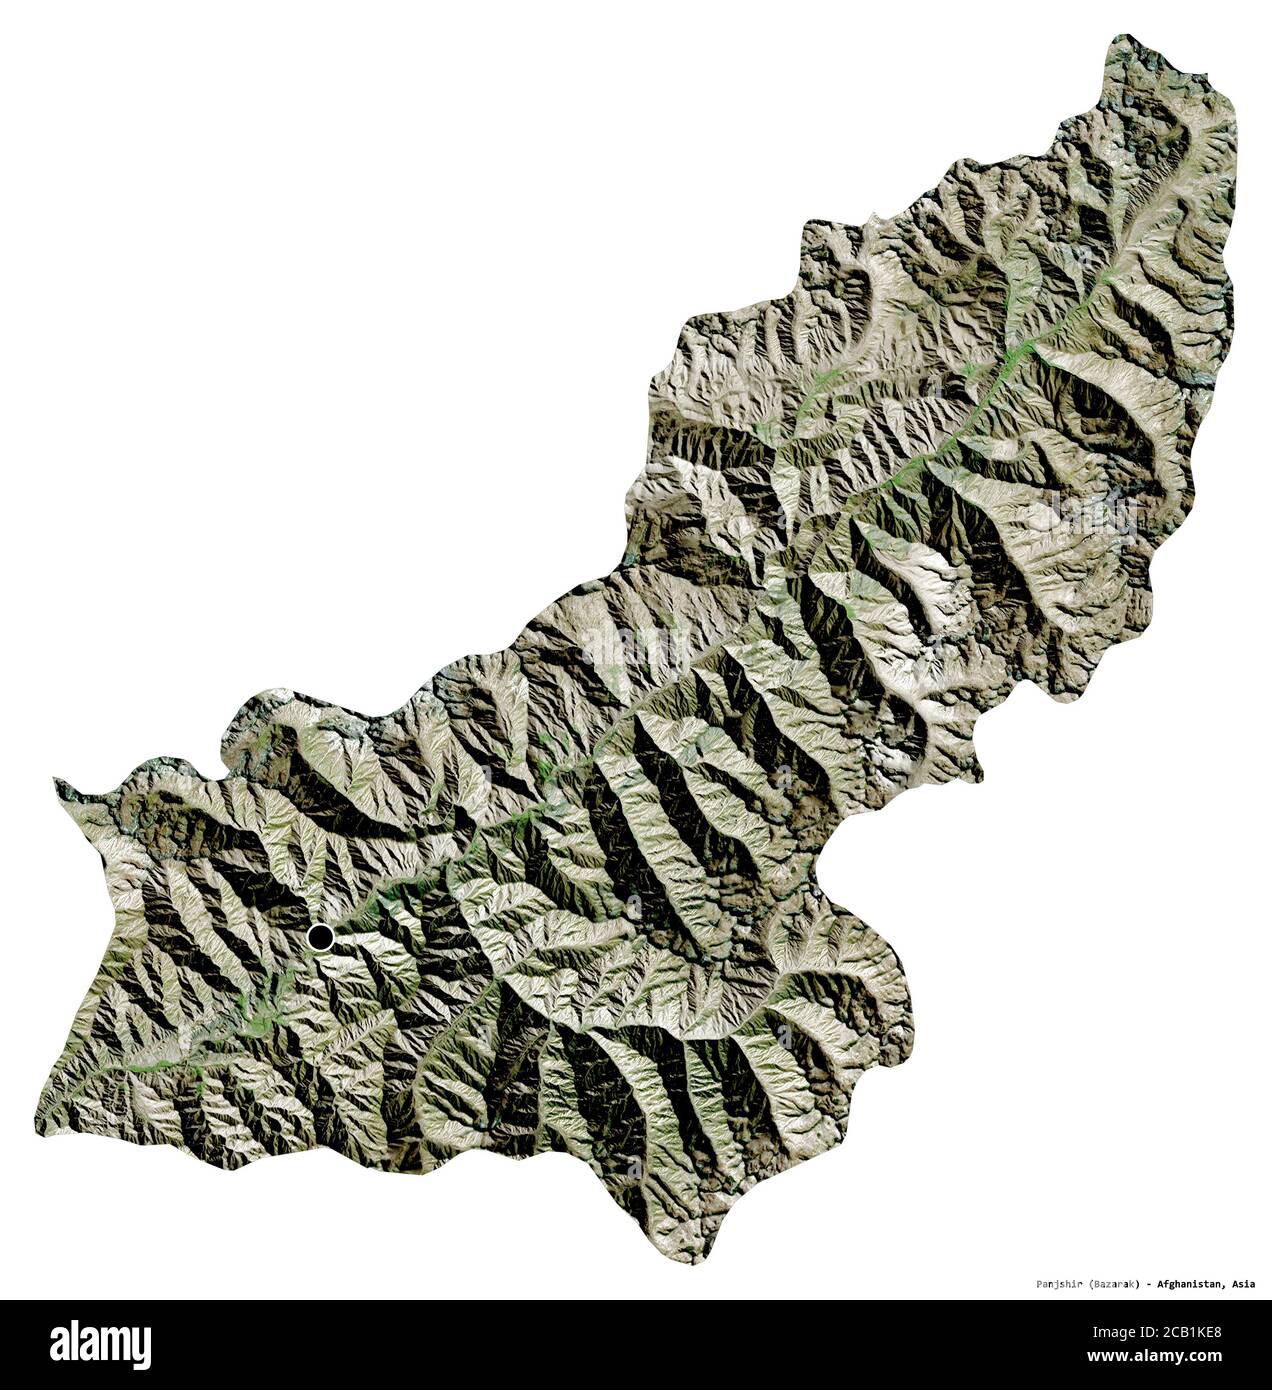 Forma del Panjshir, provincia dell'Afghanistan, con la sua capitale isolata su sfondo bianco. Immagini satellitari. Rendering 3D Foto Stock